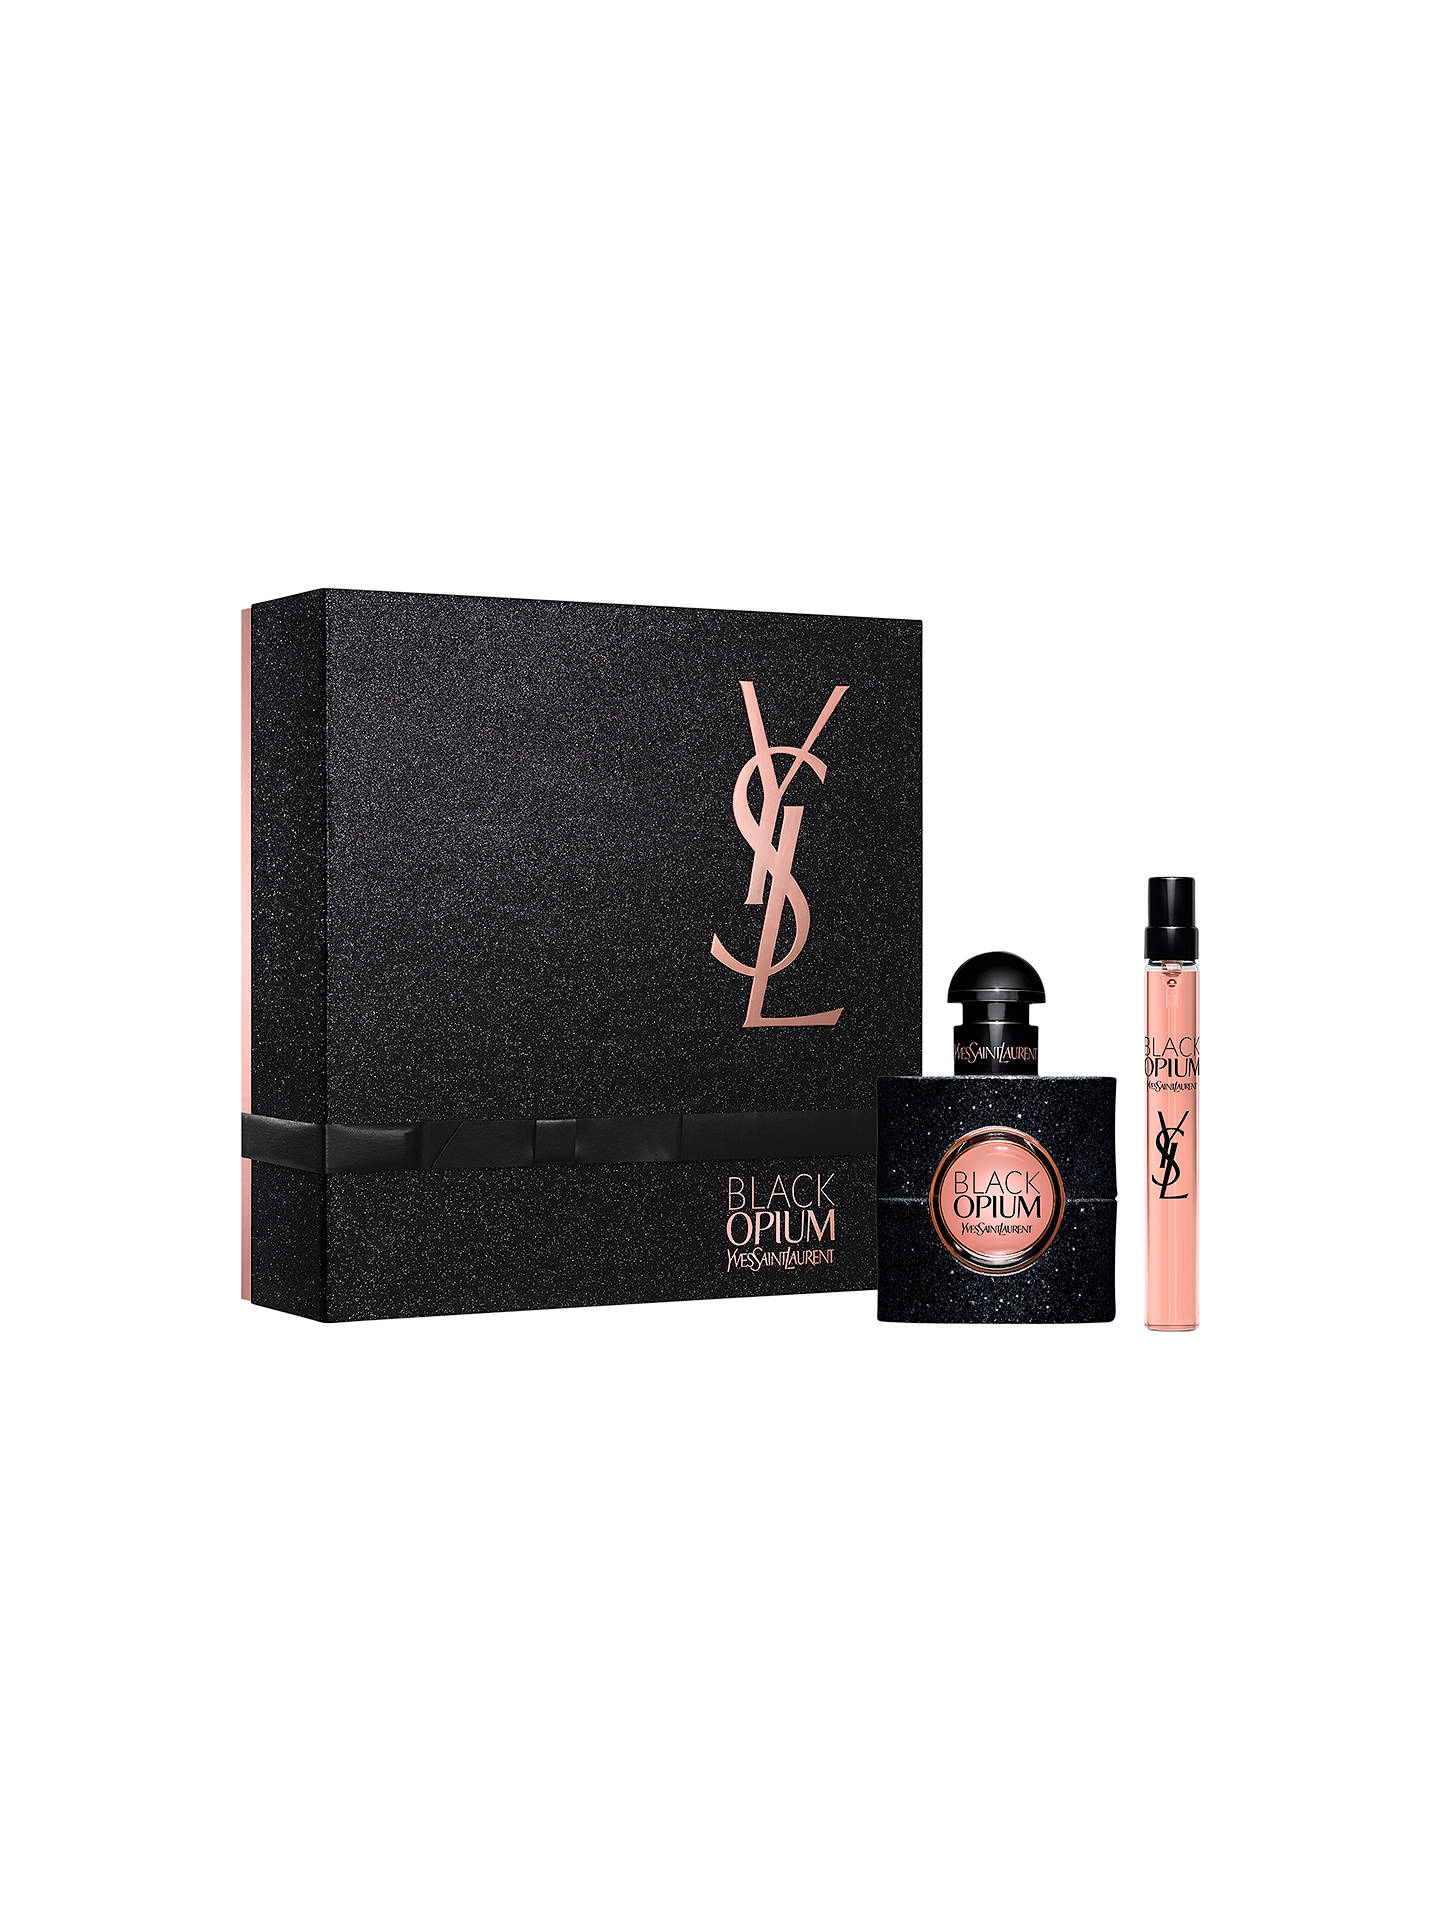 Yves Saint Laurent Black Opium 30ml Eau de Parfum